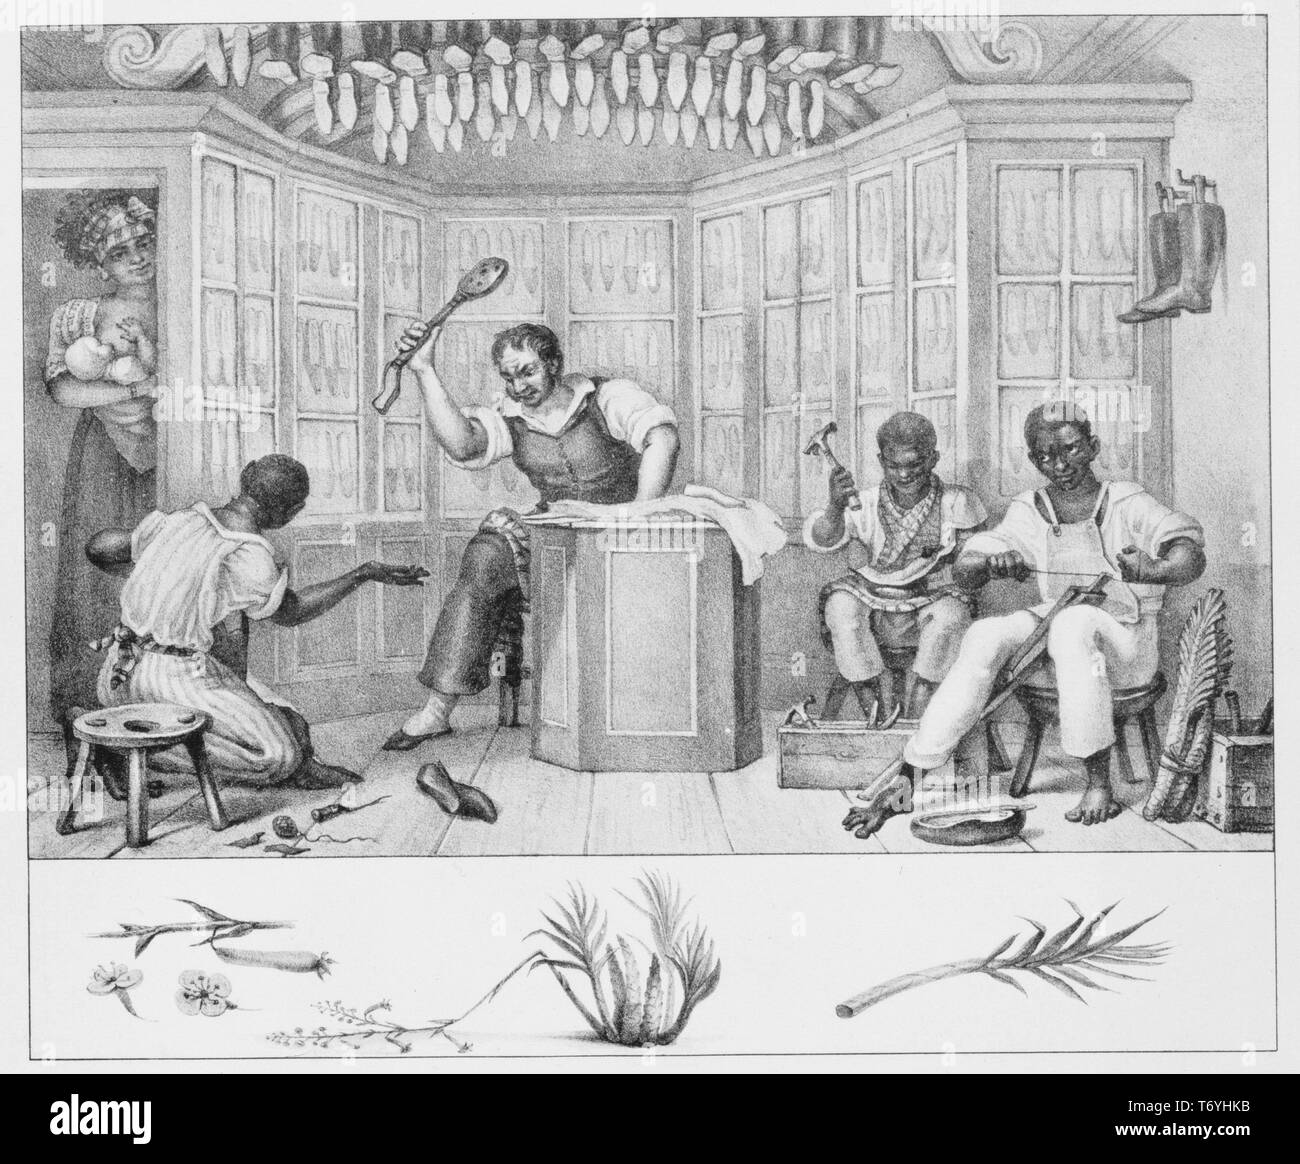 Incisione di bottega del calzolaio, il proprietario a perseguire il suo americano africano lavoratori, 1836. Dalla Biblioteca Pubblica di New York. () Foto Stock